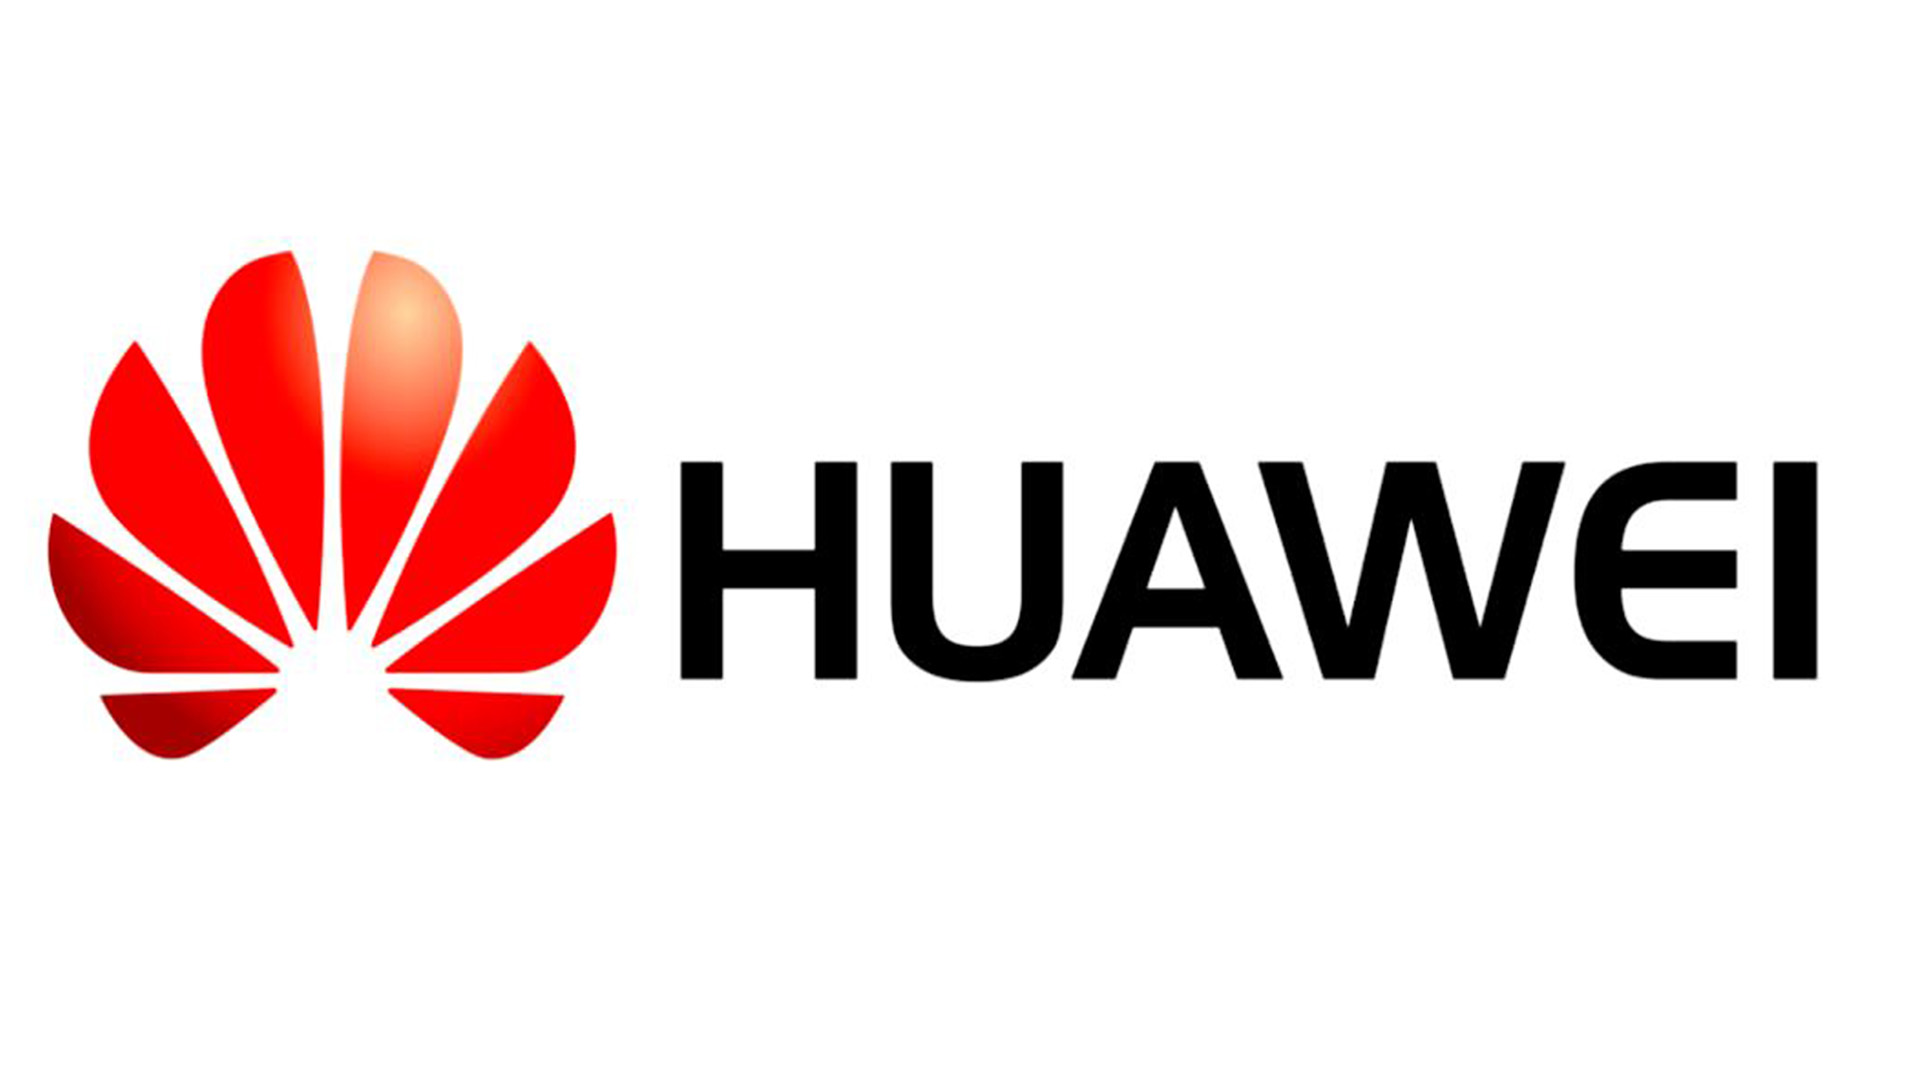 Huawei อาจเปลี่ยนไปใช้ระบบปฏิบัติการ Sailfish: เป็นความคิดที่ไม่ดีหรือไม่?